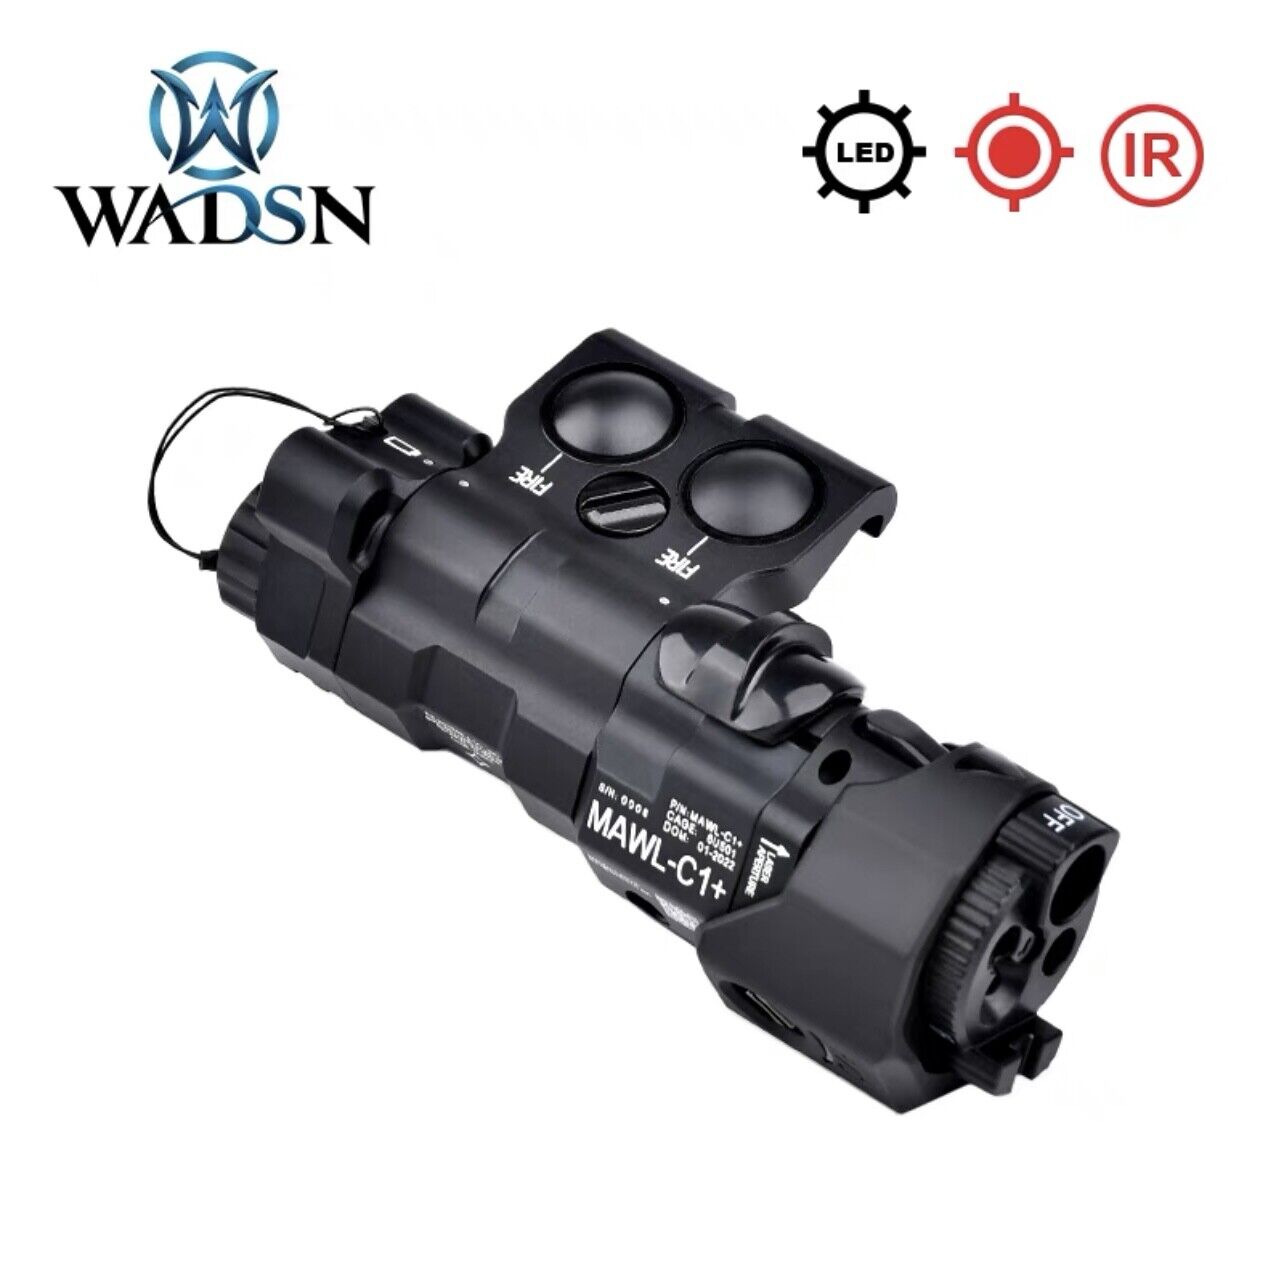 WADSN Metal MAWL C1 Visible Laser / IR Pointer light / White Light Module -  BK